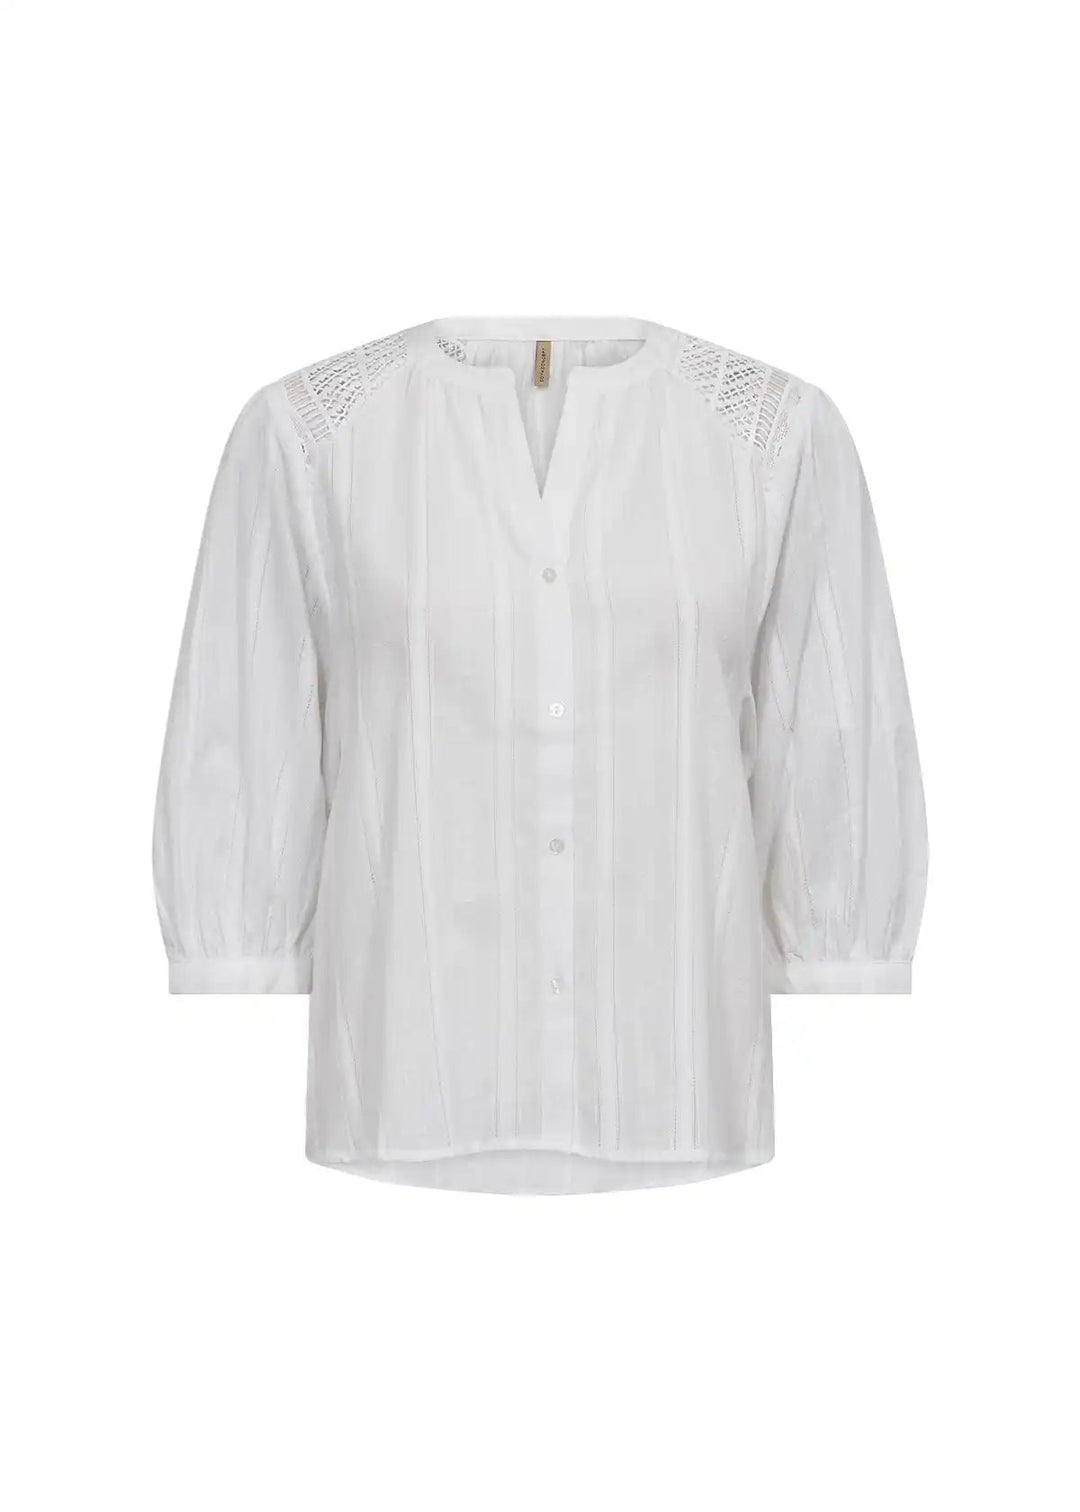 Sc-Edona 1 White | Skjorter og bluser | Smuk - Dameklær på nett